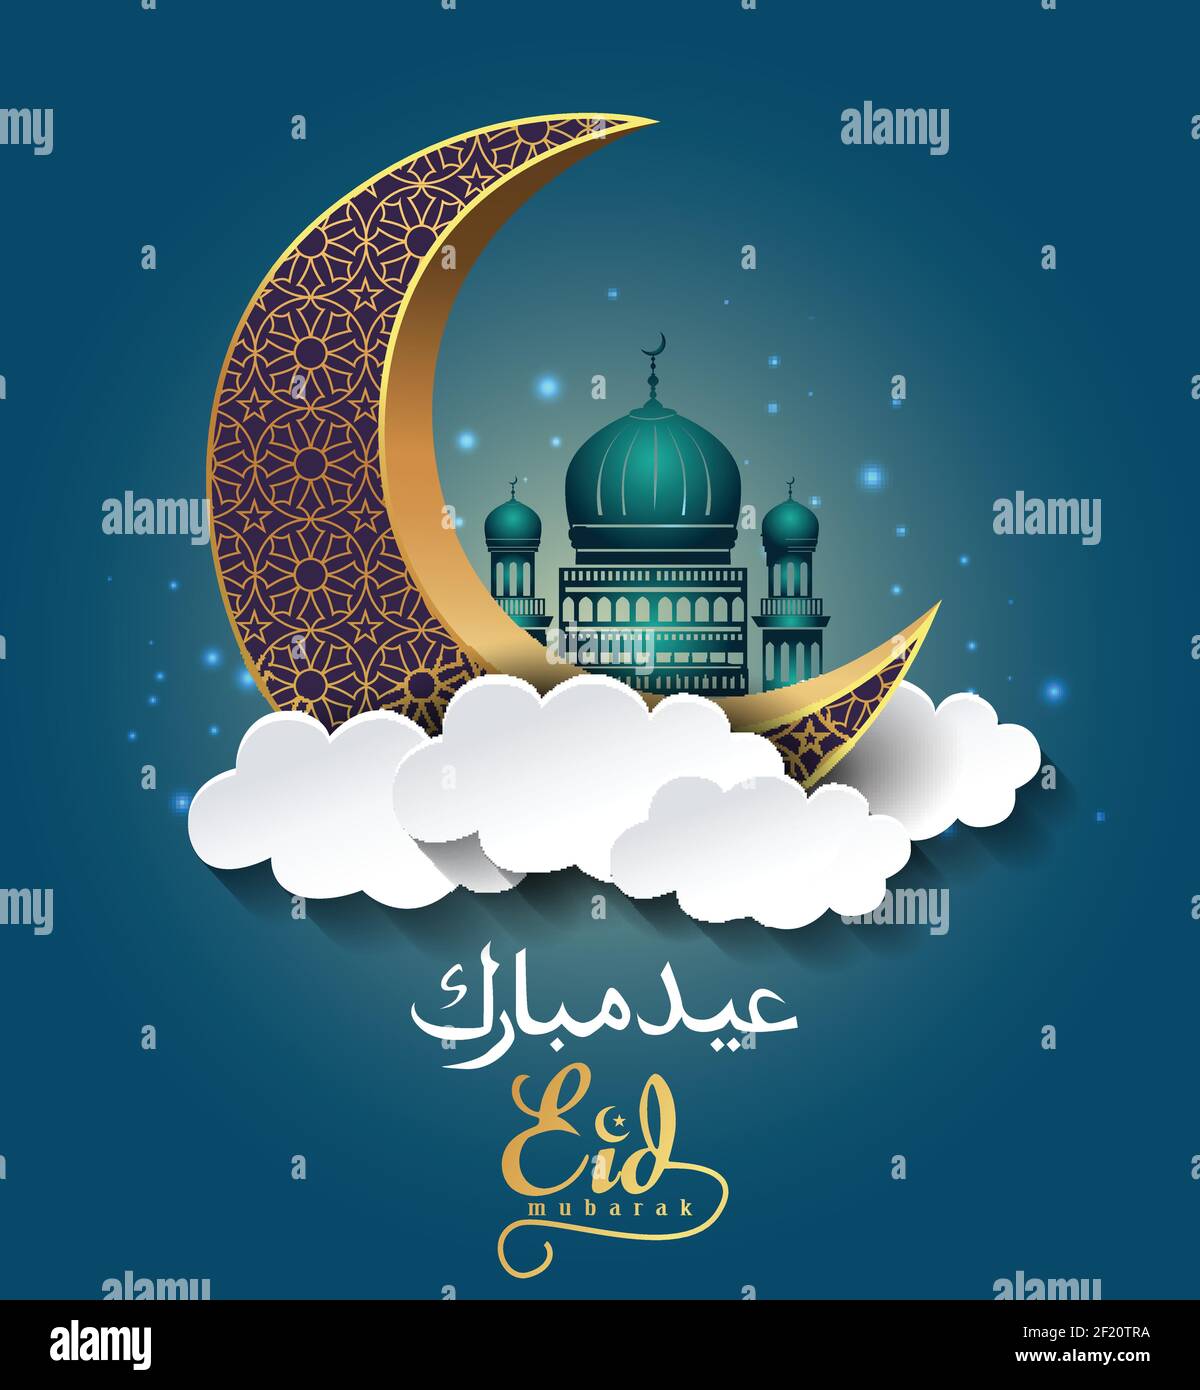 Màu sắc rực rỡ và thiết kế đẹp mắt của Eid Mubarak Design Background đã khiến nó trở thành lễ hội nổi tiếng của thế giới Hồi giáo. Hãy xem các hình ảnh để cảm nhận sự độc đáo và ấn tượng của nó. 